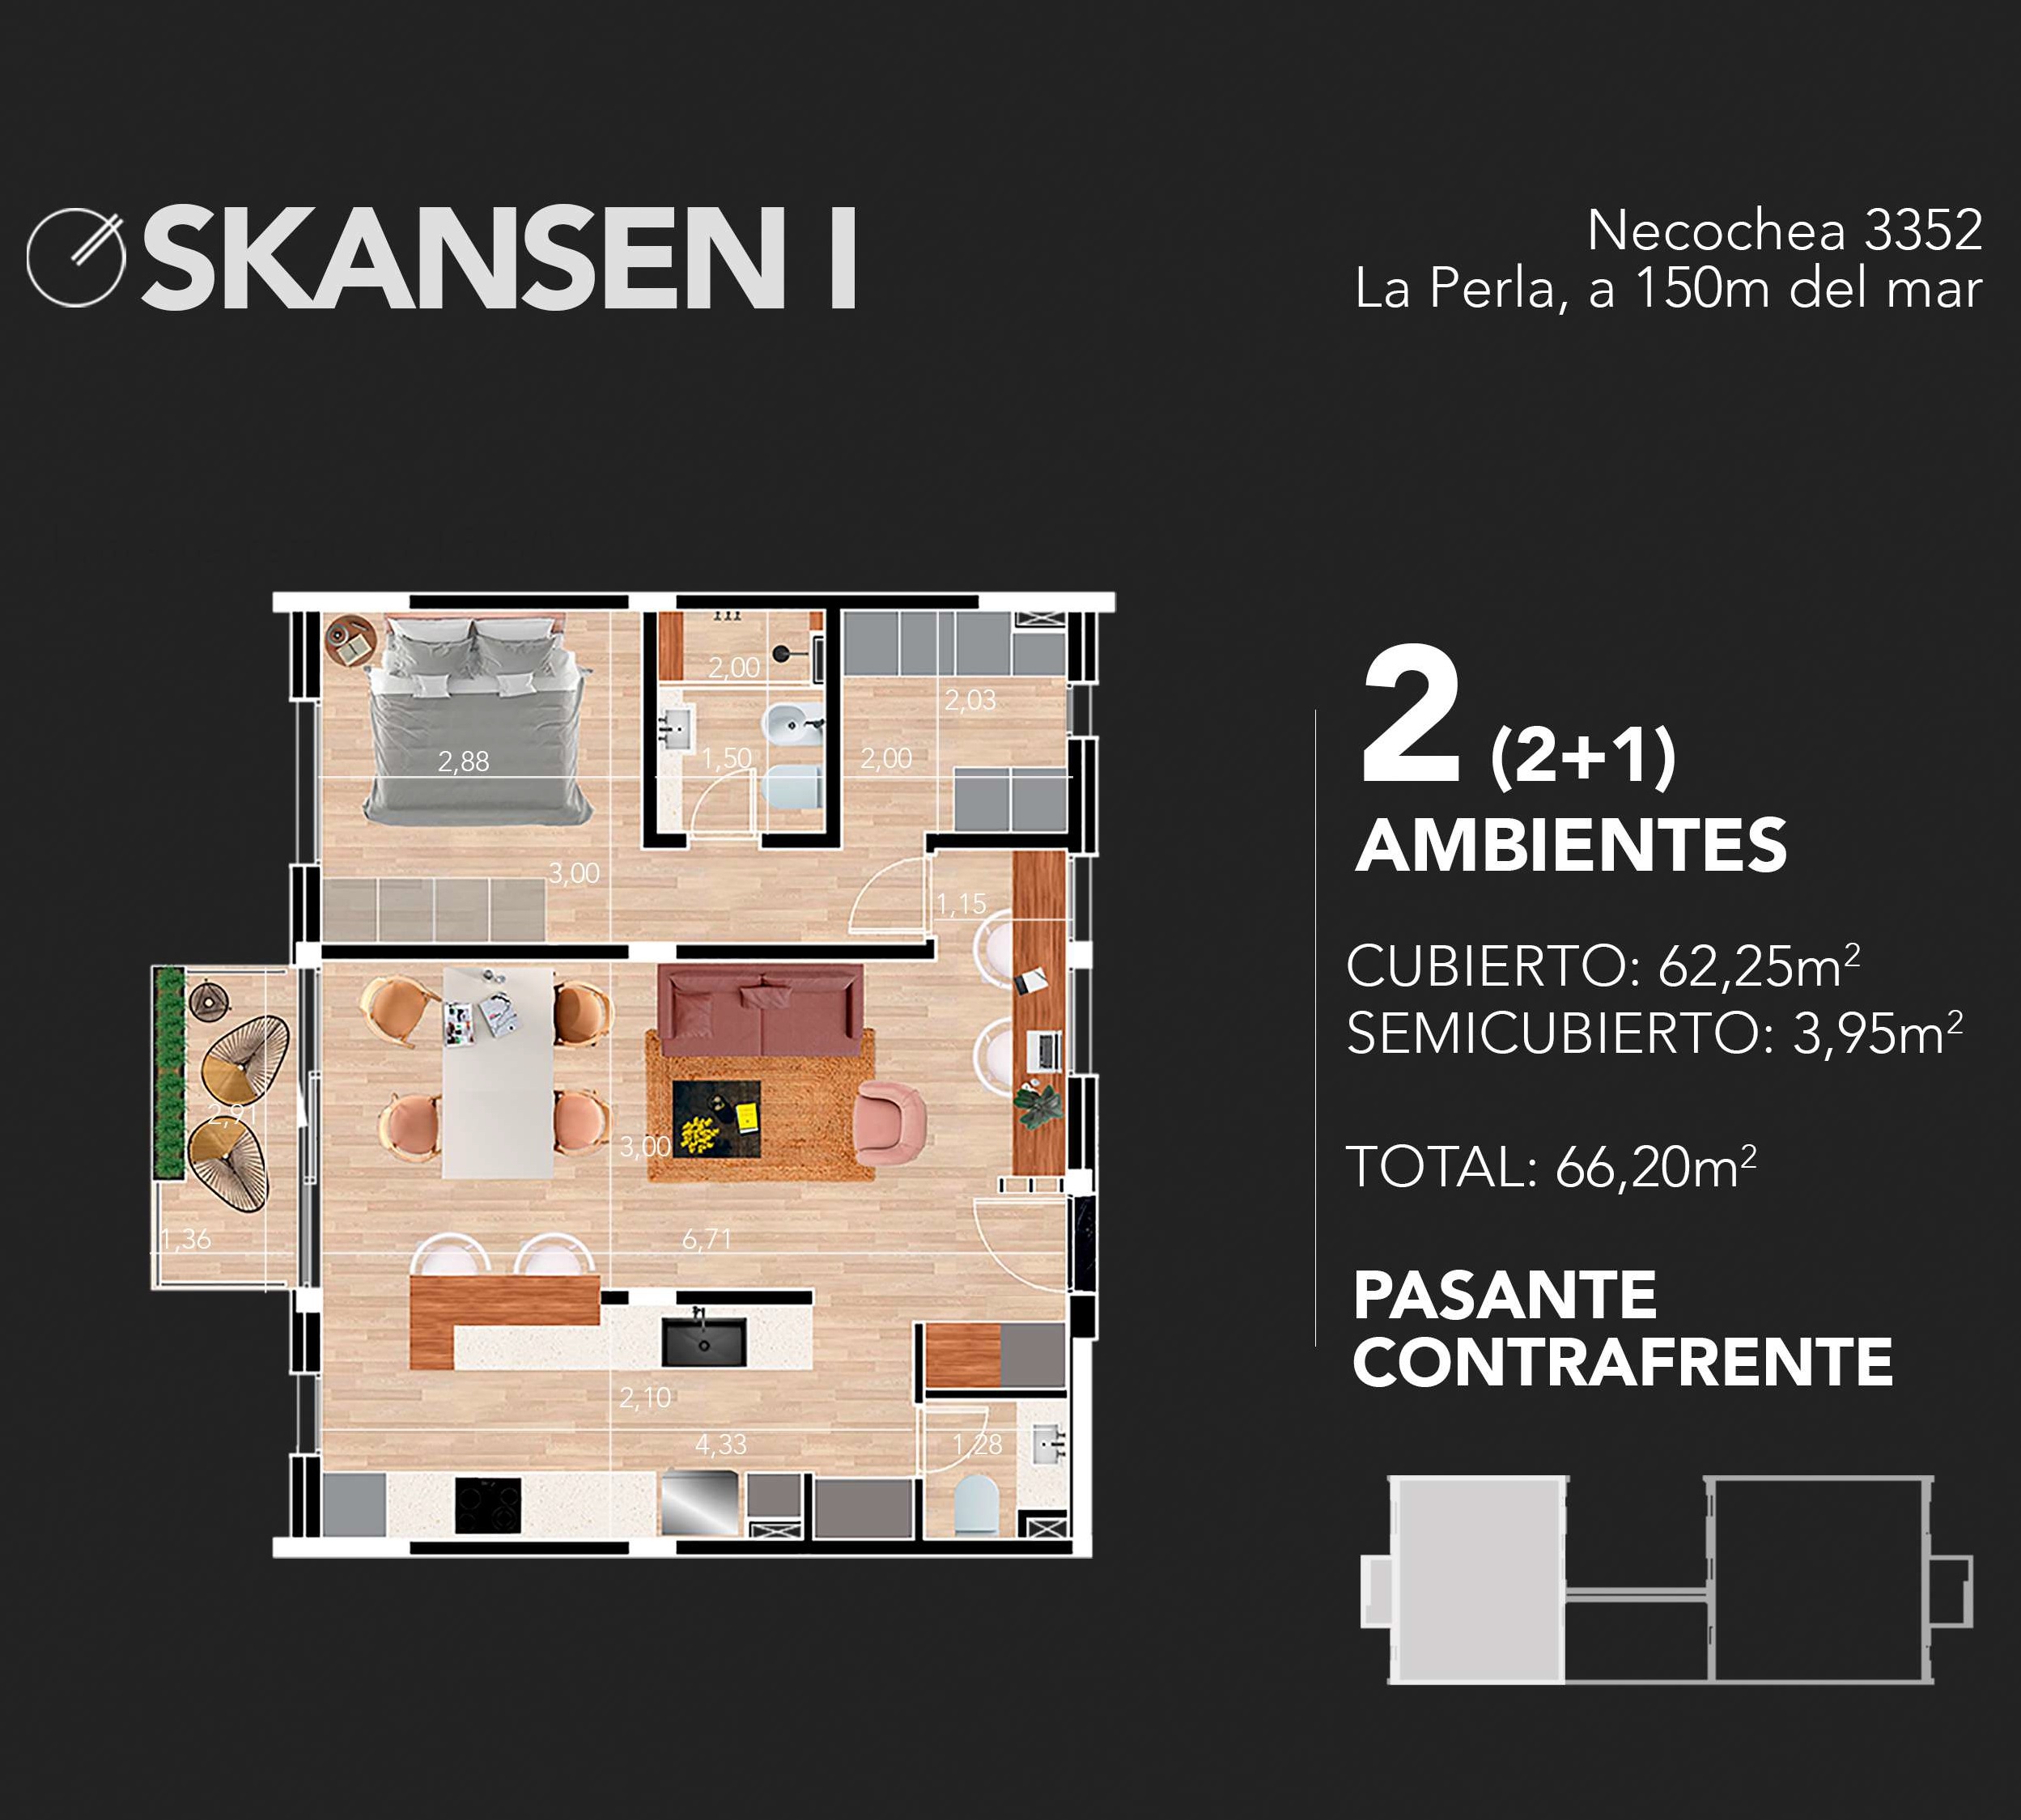 Venta en Pozo departamentos de 2 ambientes con cocheras opcional.  Edificio Skansen I La Perla 